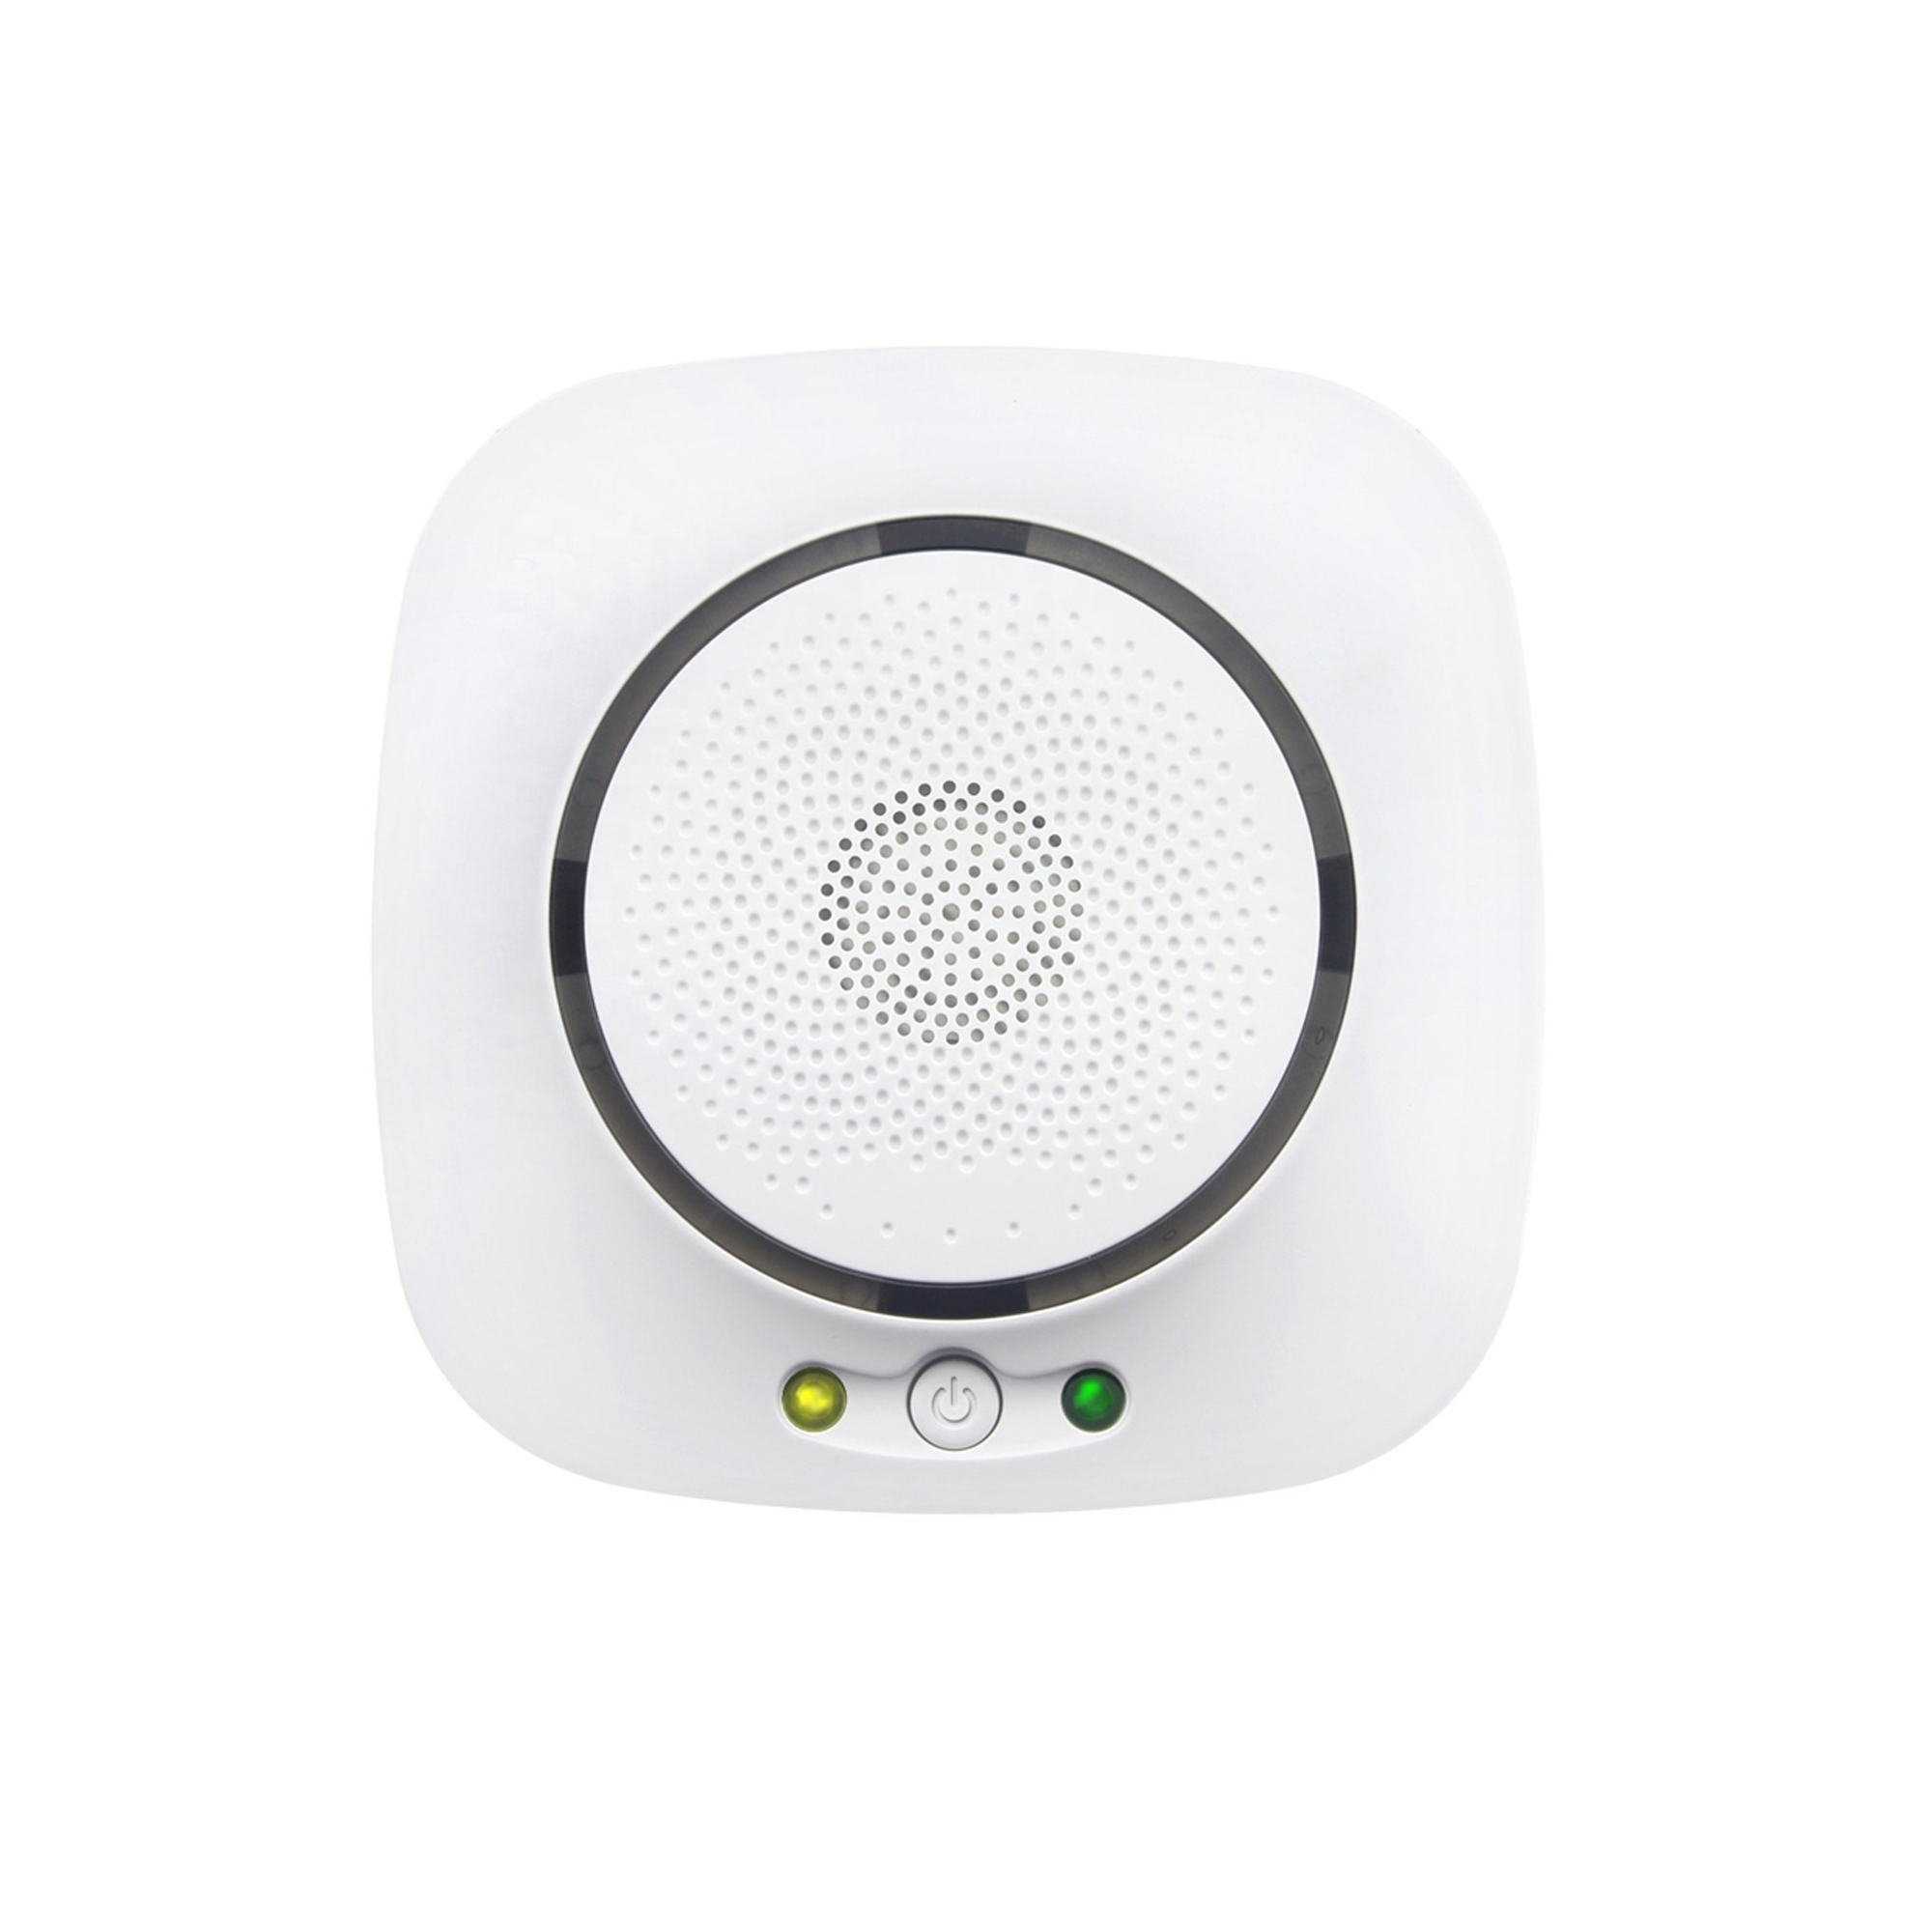 Senzor de gaz inteligent PNI SafeHome PT200G WiFi cu alertare sonora, aplicatie de mobil Tuya Smart, integrare in scenarii si automatizari smart cu alte produse compatibile Tuya, Alexa si Google Assi